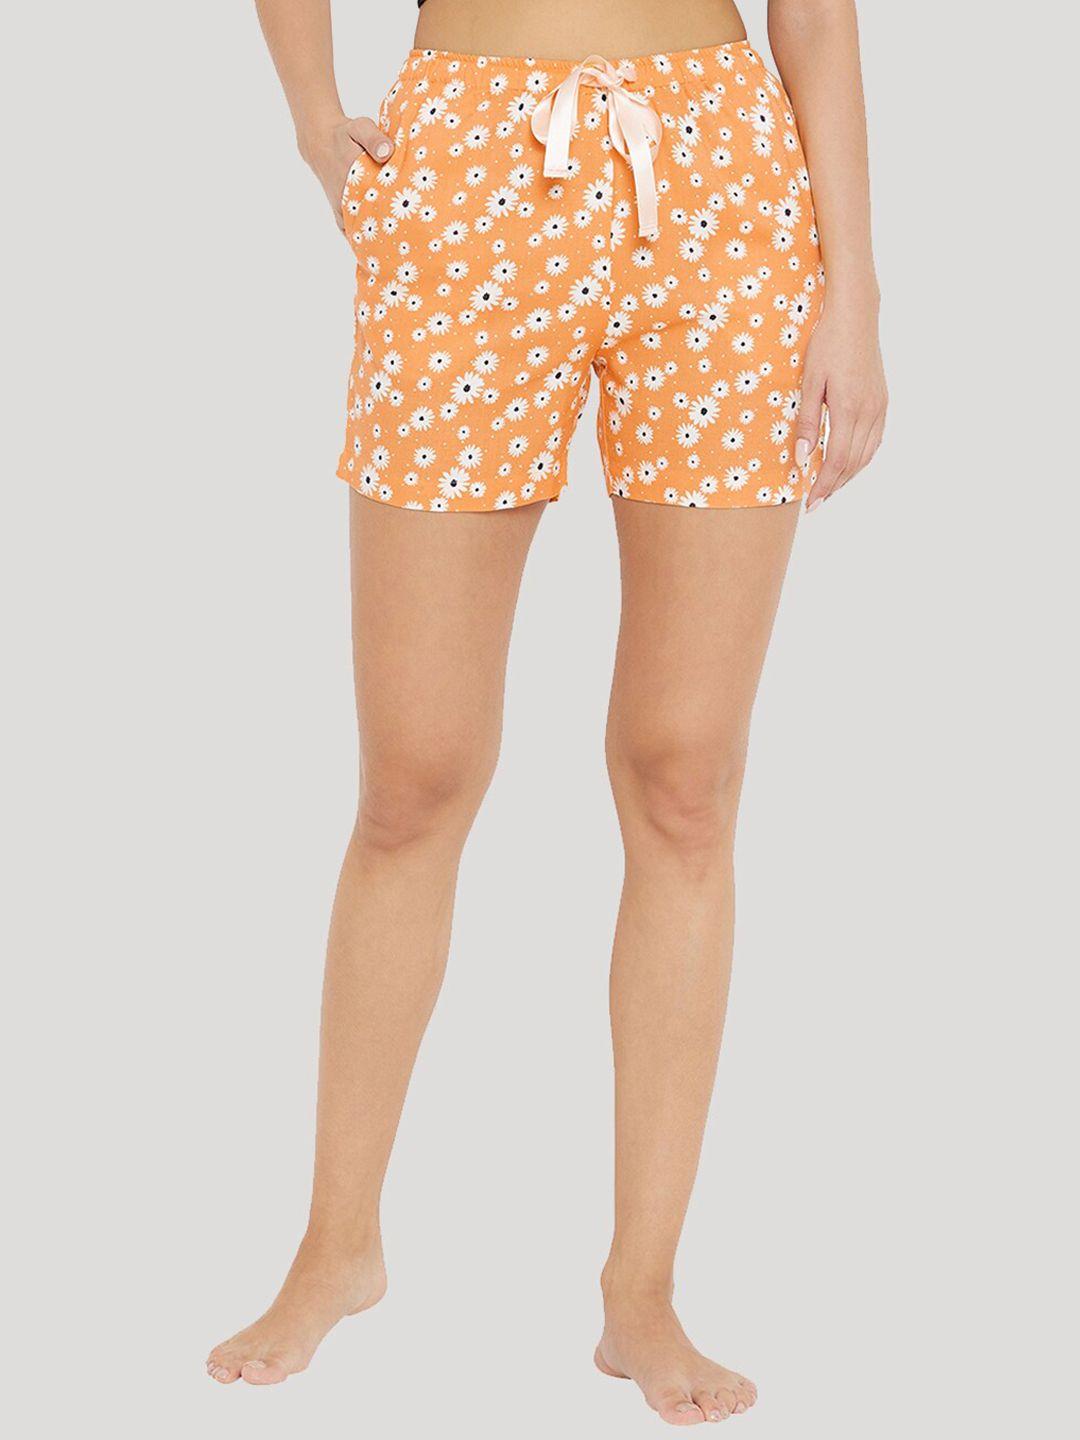 Style SHOES Women Orange & White Printed Lounge Shorts